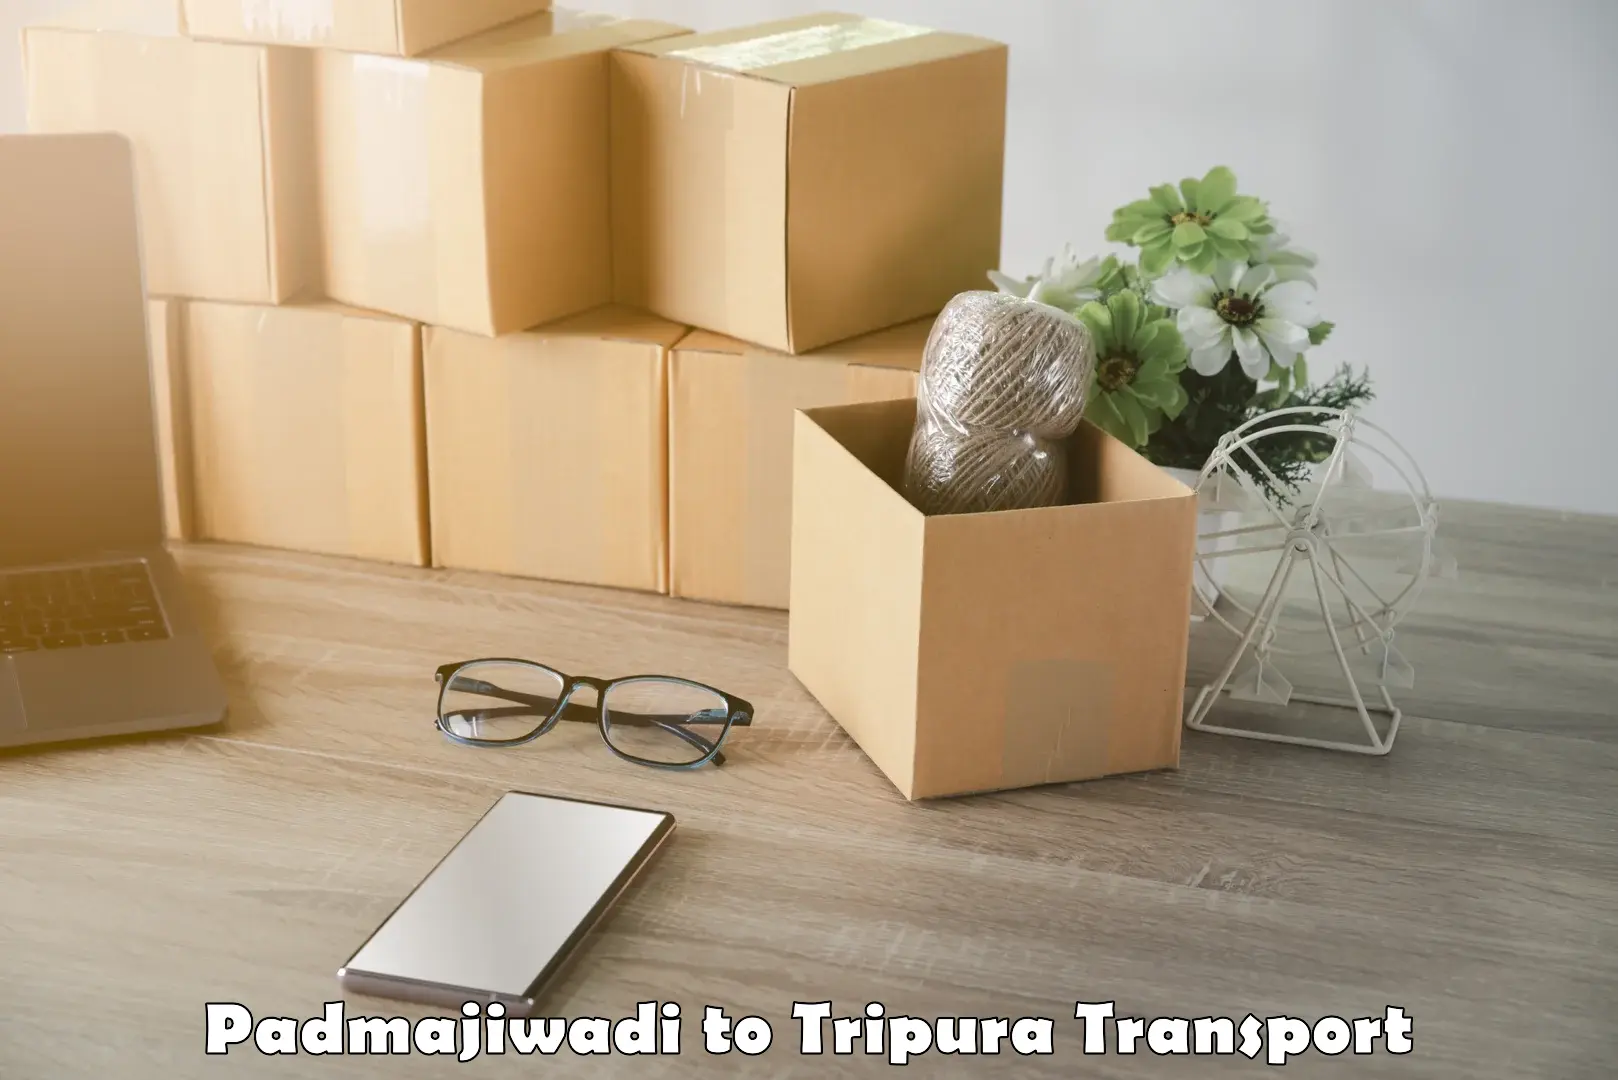 Lorry transport service Padmajiwadi to Tripura